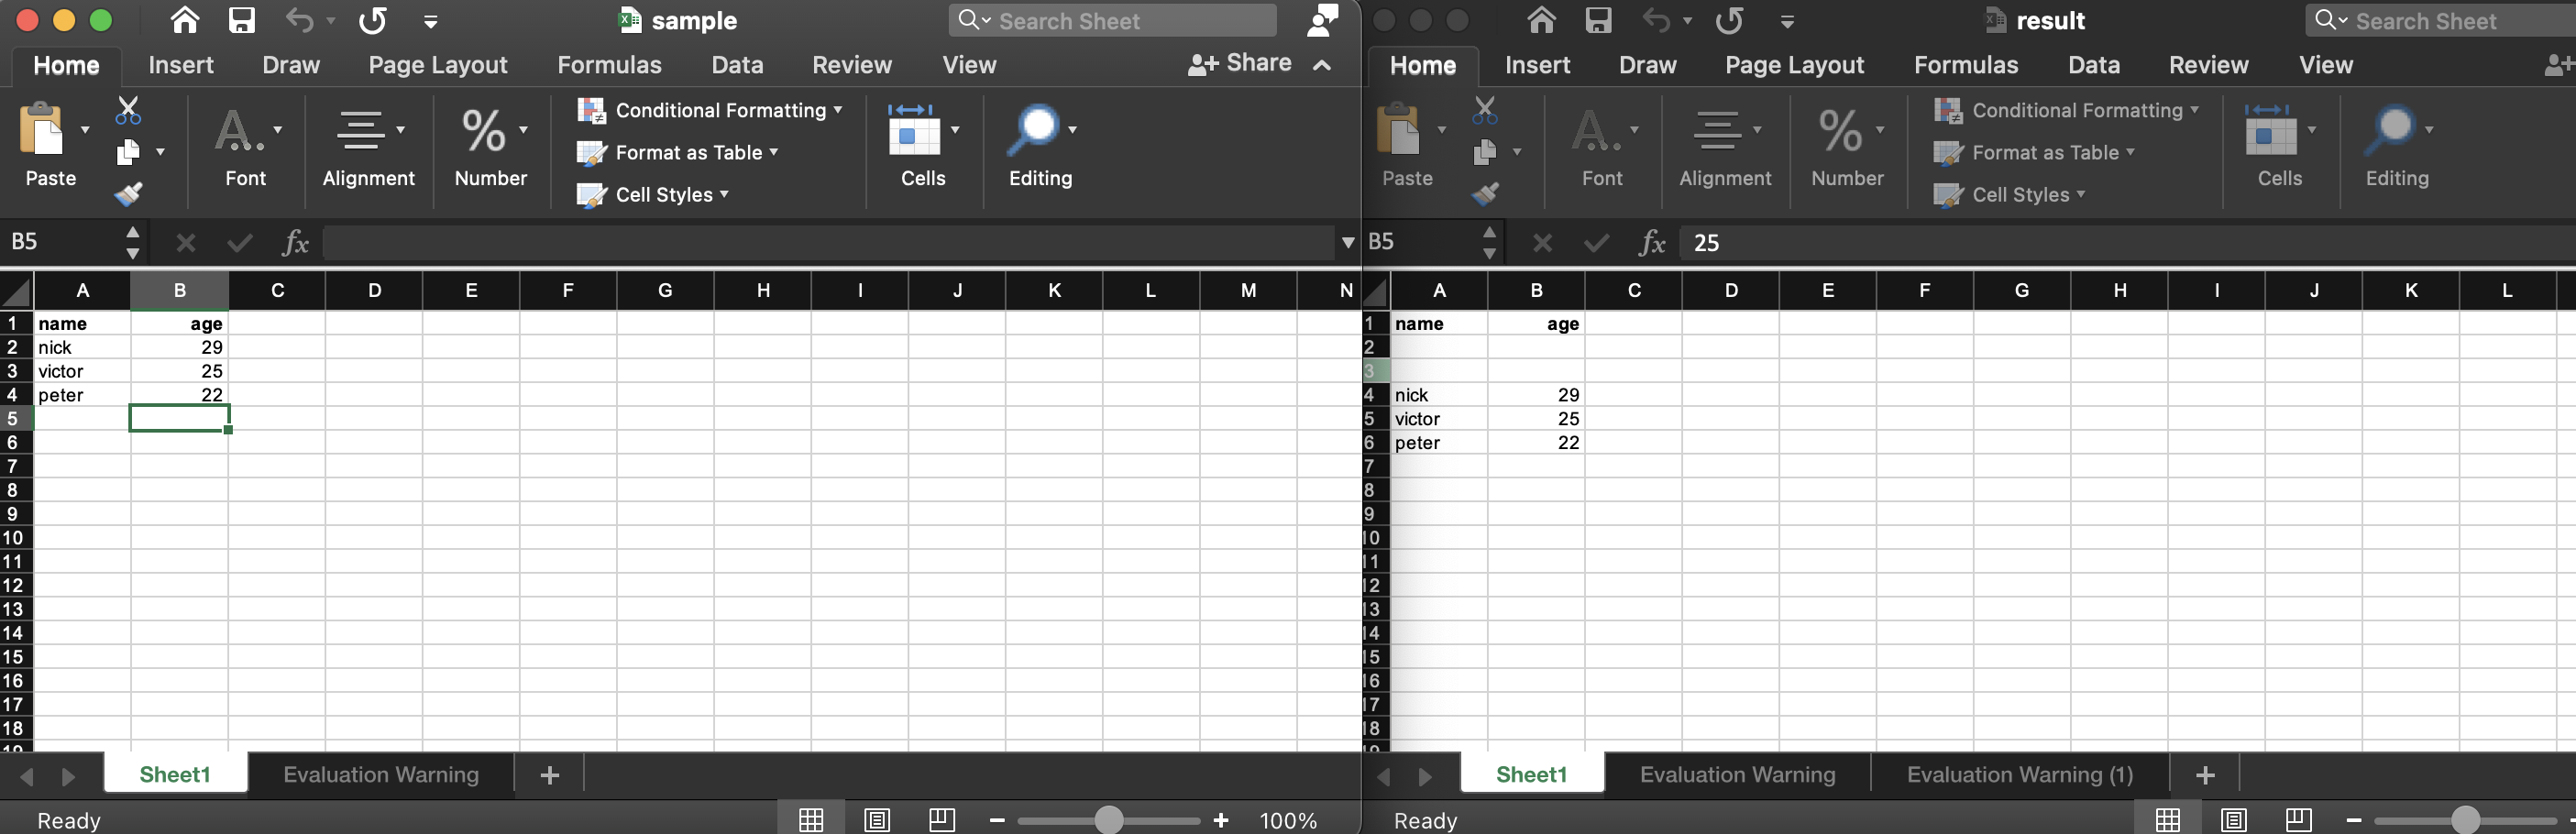 inserir linhas e colunas em um arquivo do Excel usando Node.js